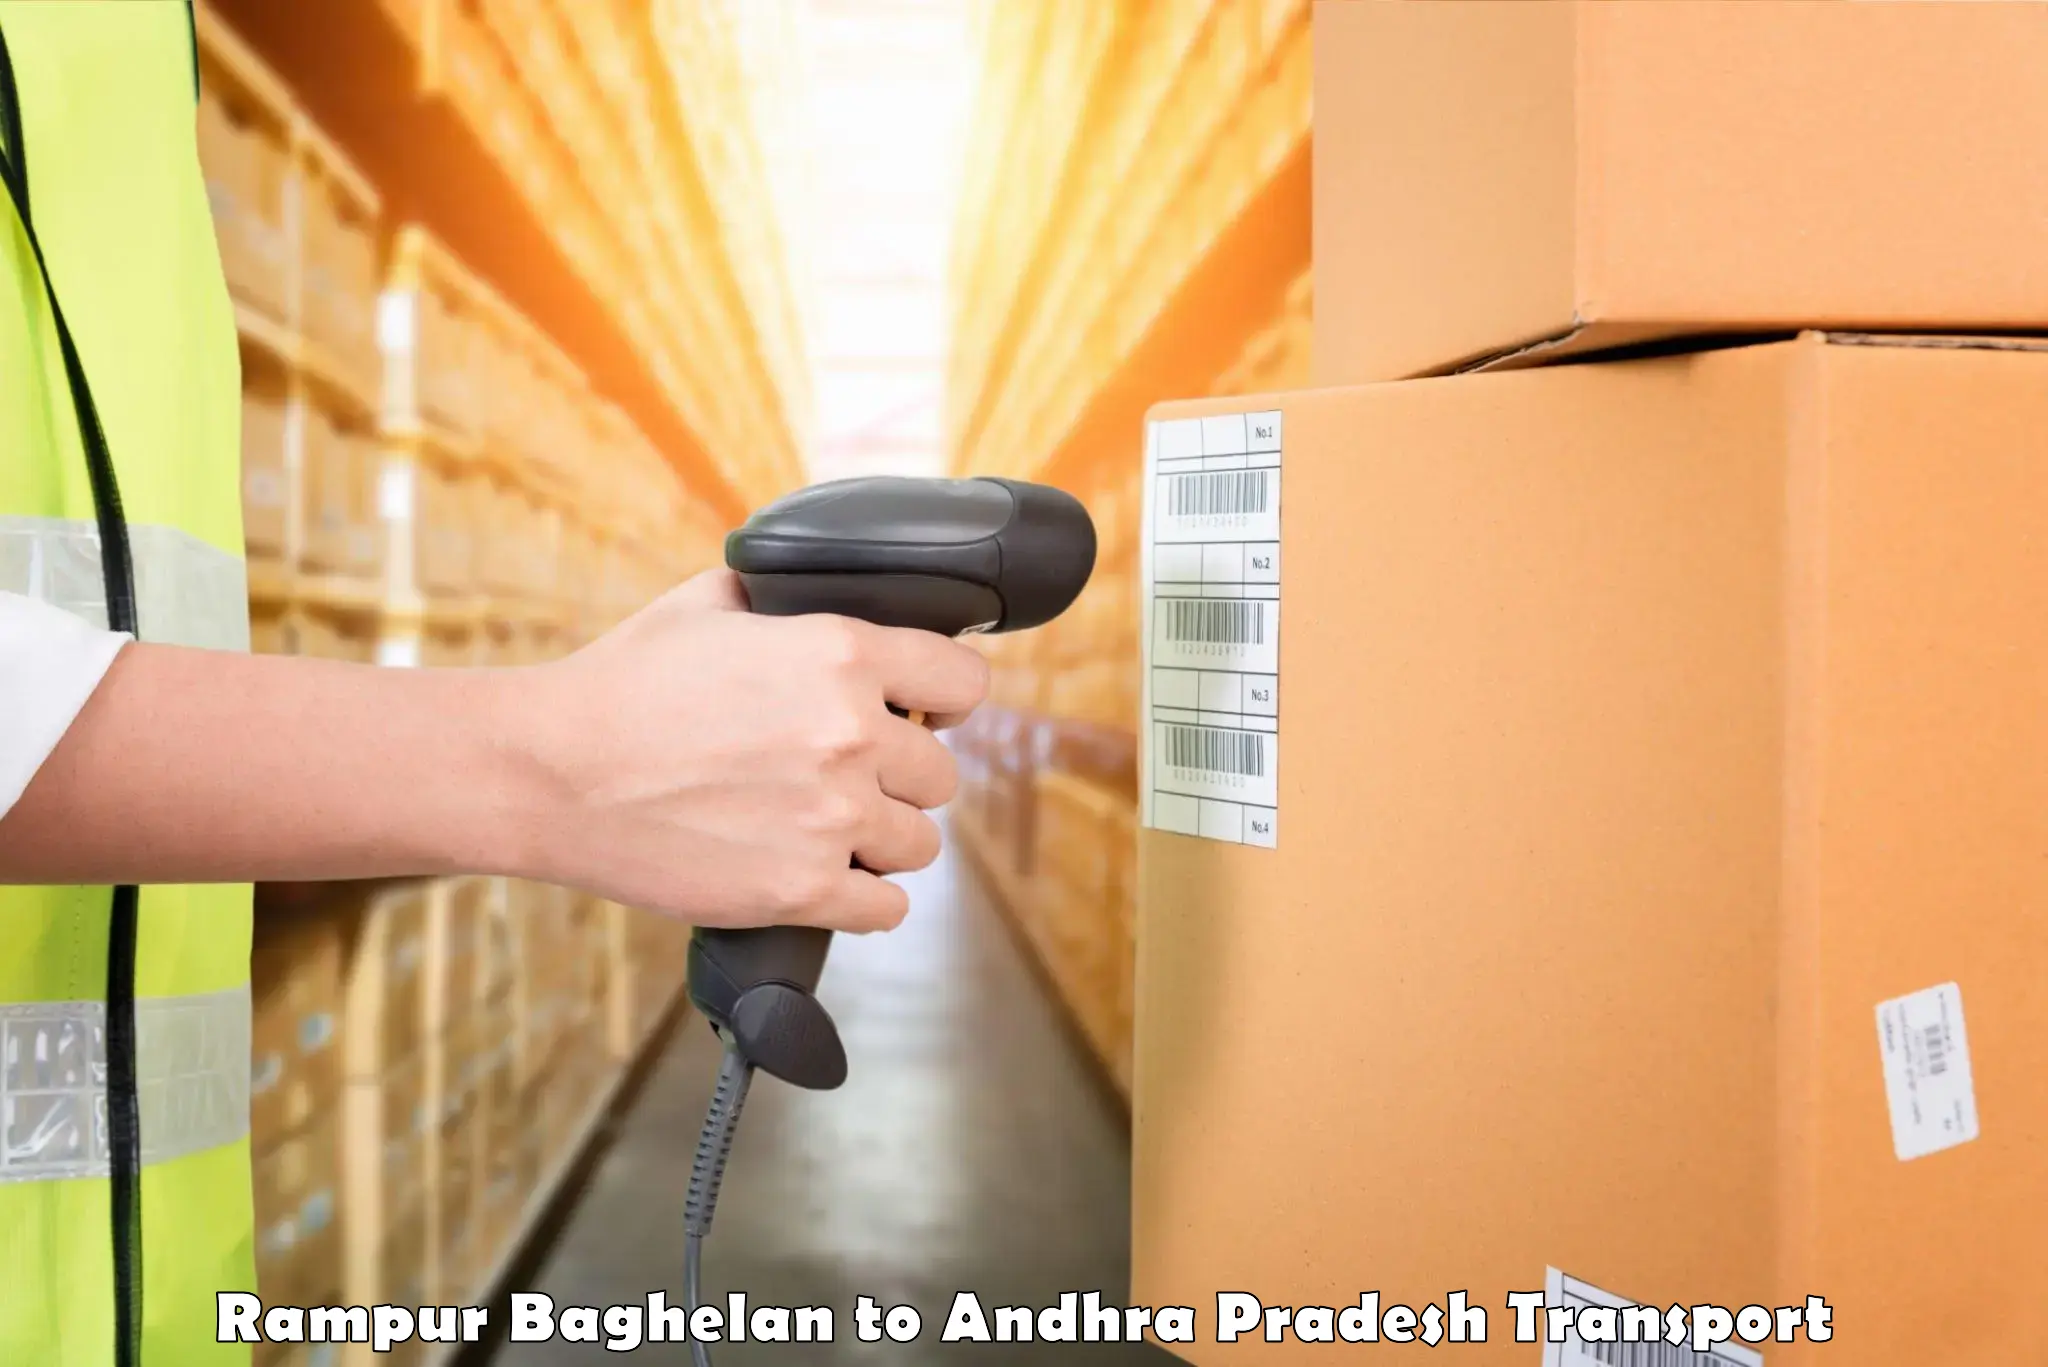 Container transport service Rampur Baghelan to Andhra Pradesh